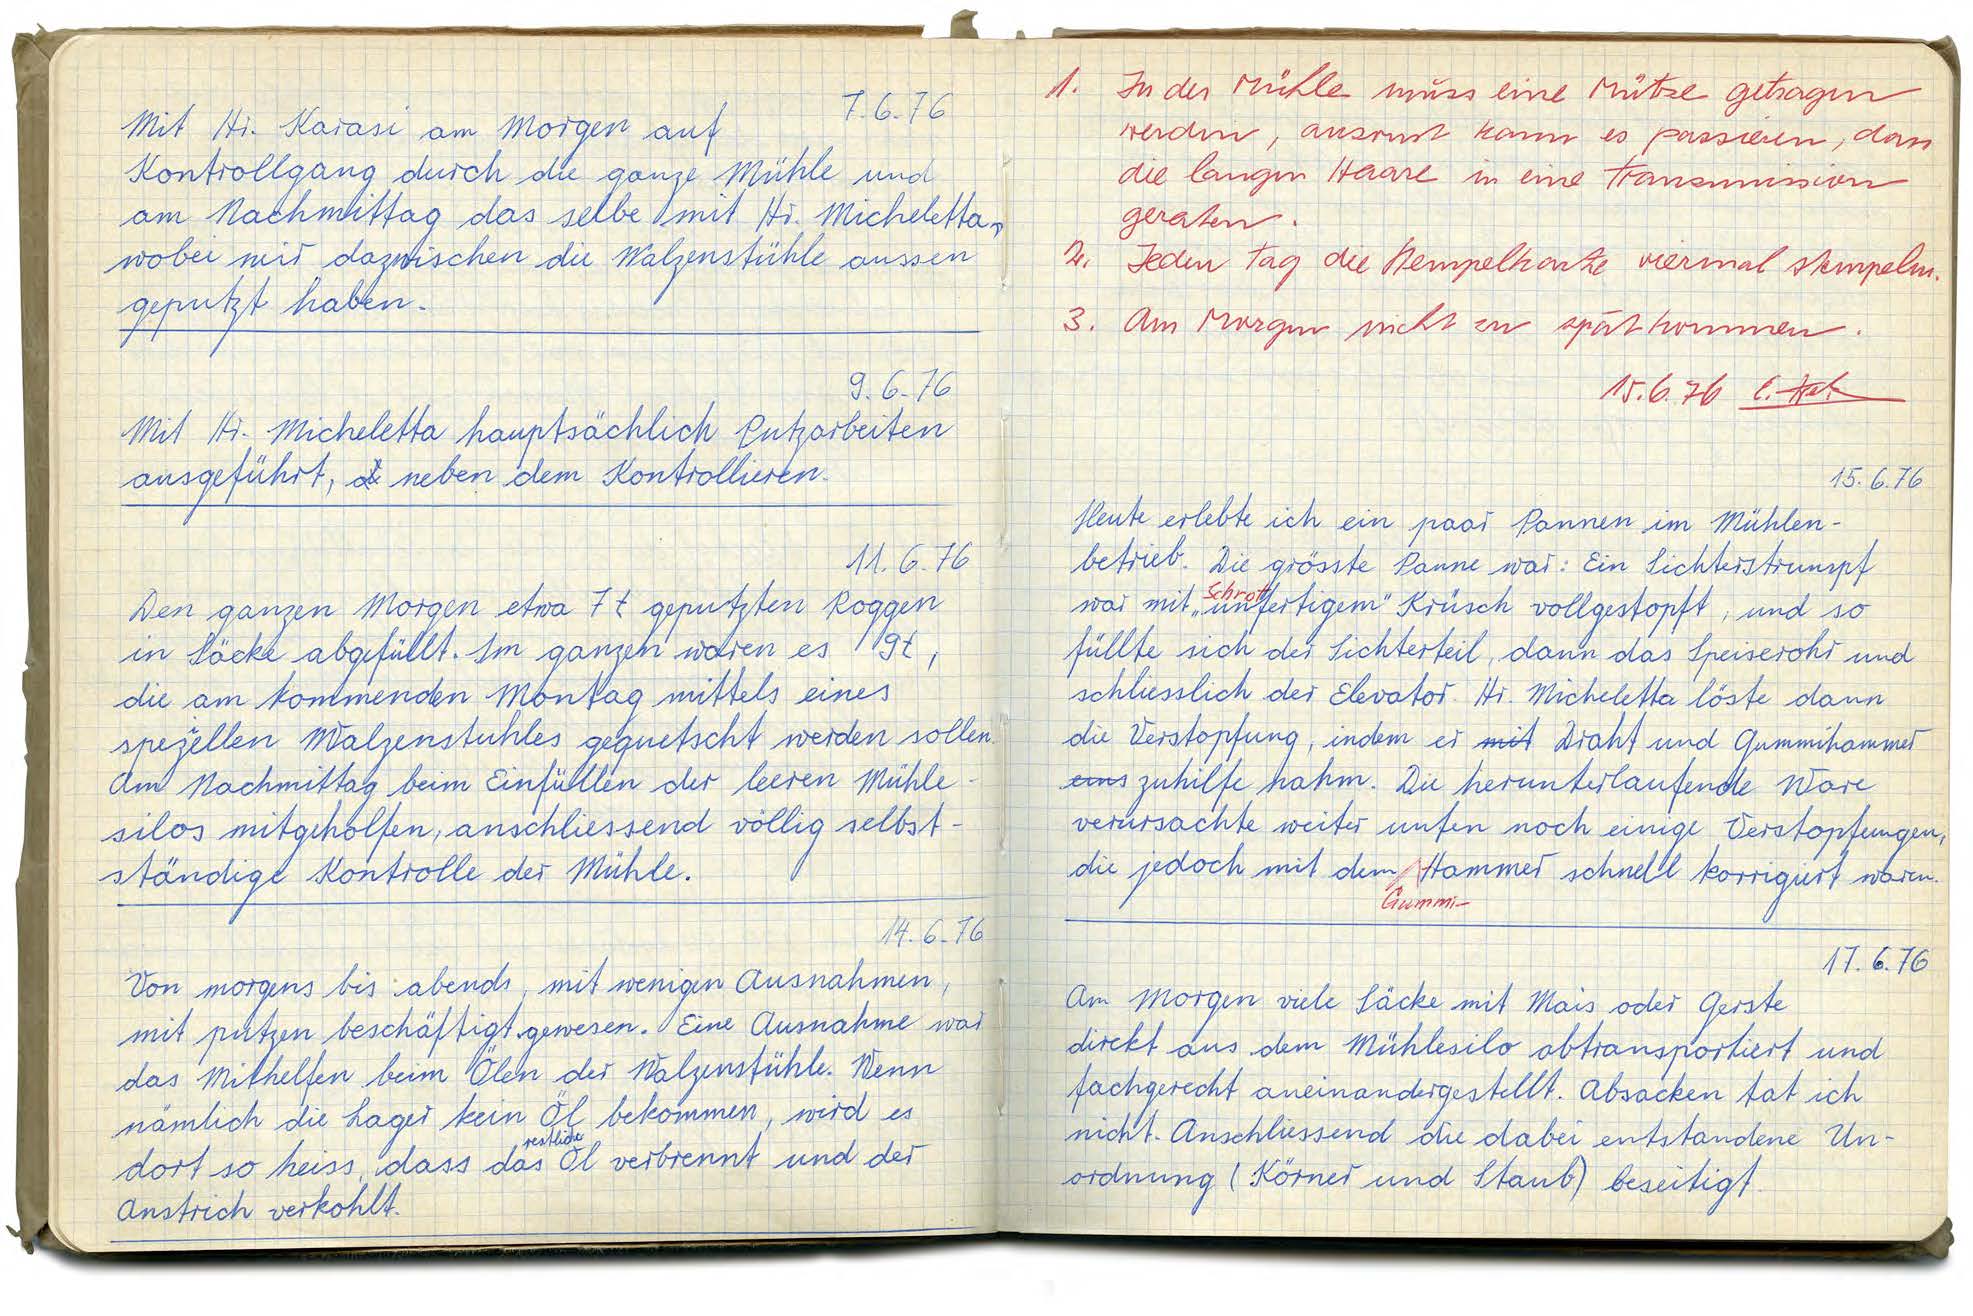 Hinweise auf Risiken und Pannen aus dem Arbeitsbuch von Heinz Gygax, Müllerlehrling im Tiefenbrunnen von 1976 bis 1979. Reproduktion.